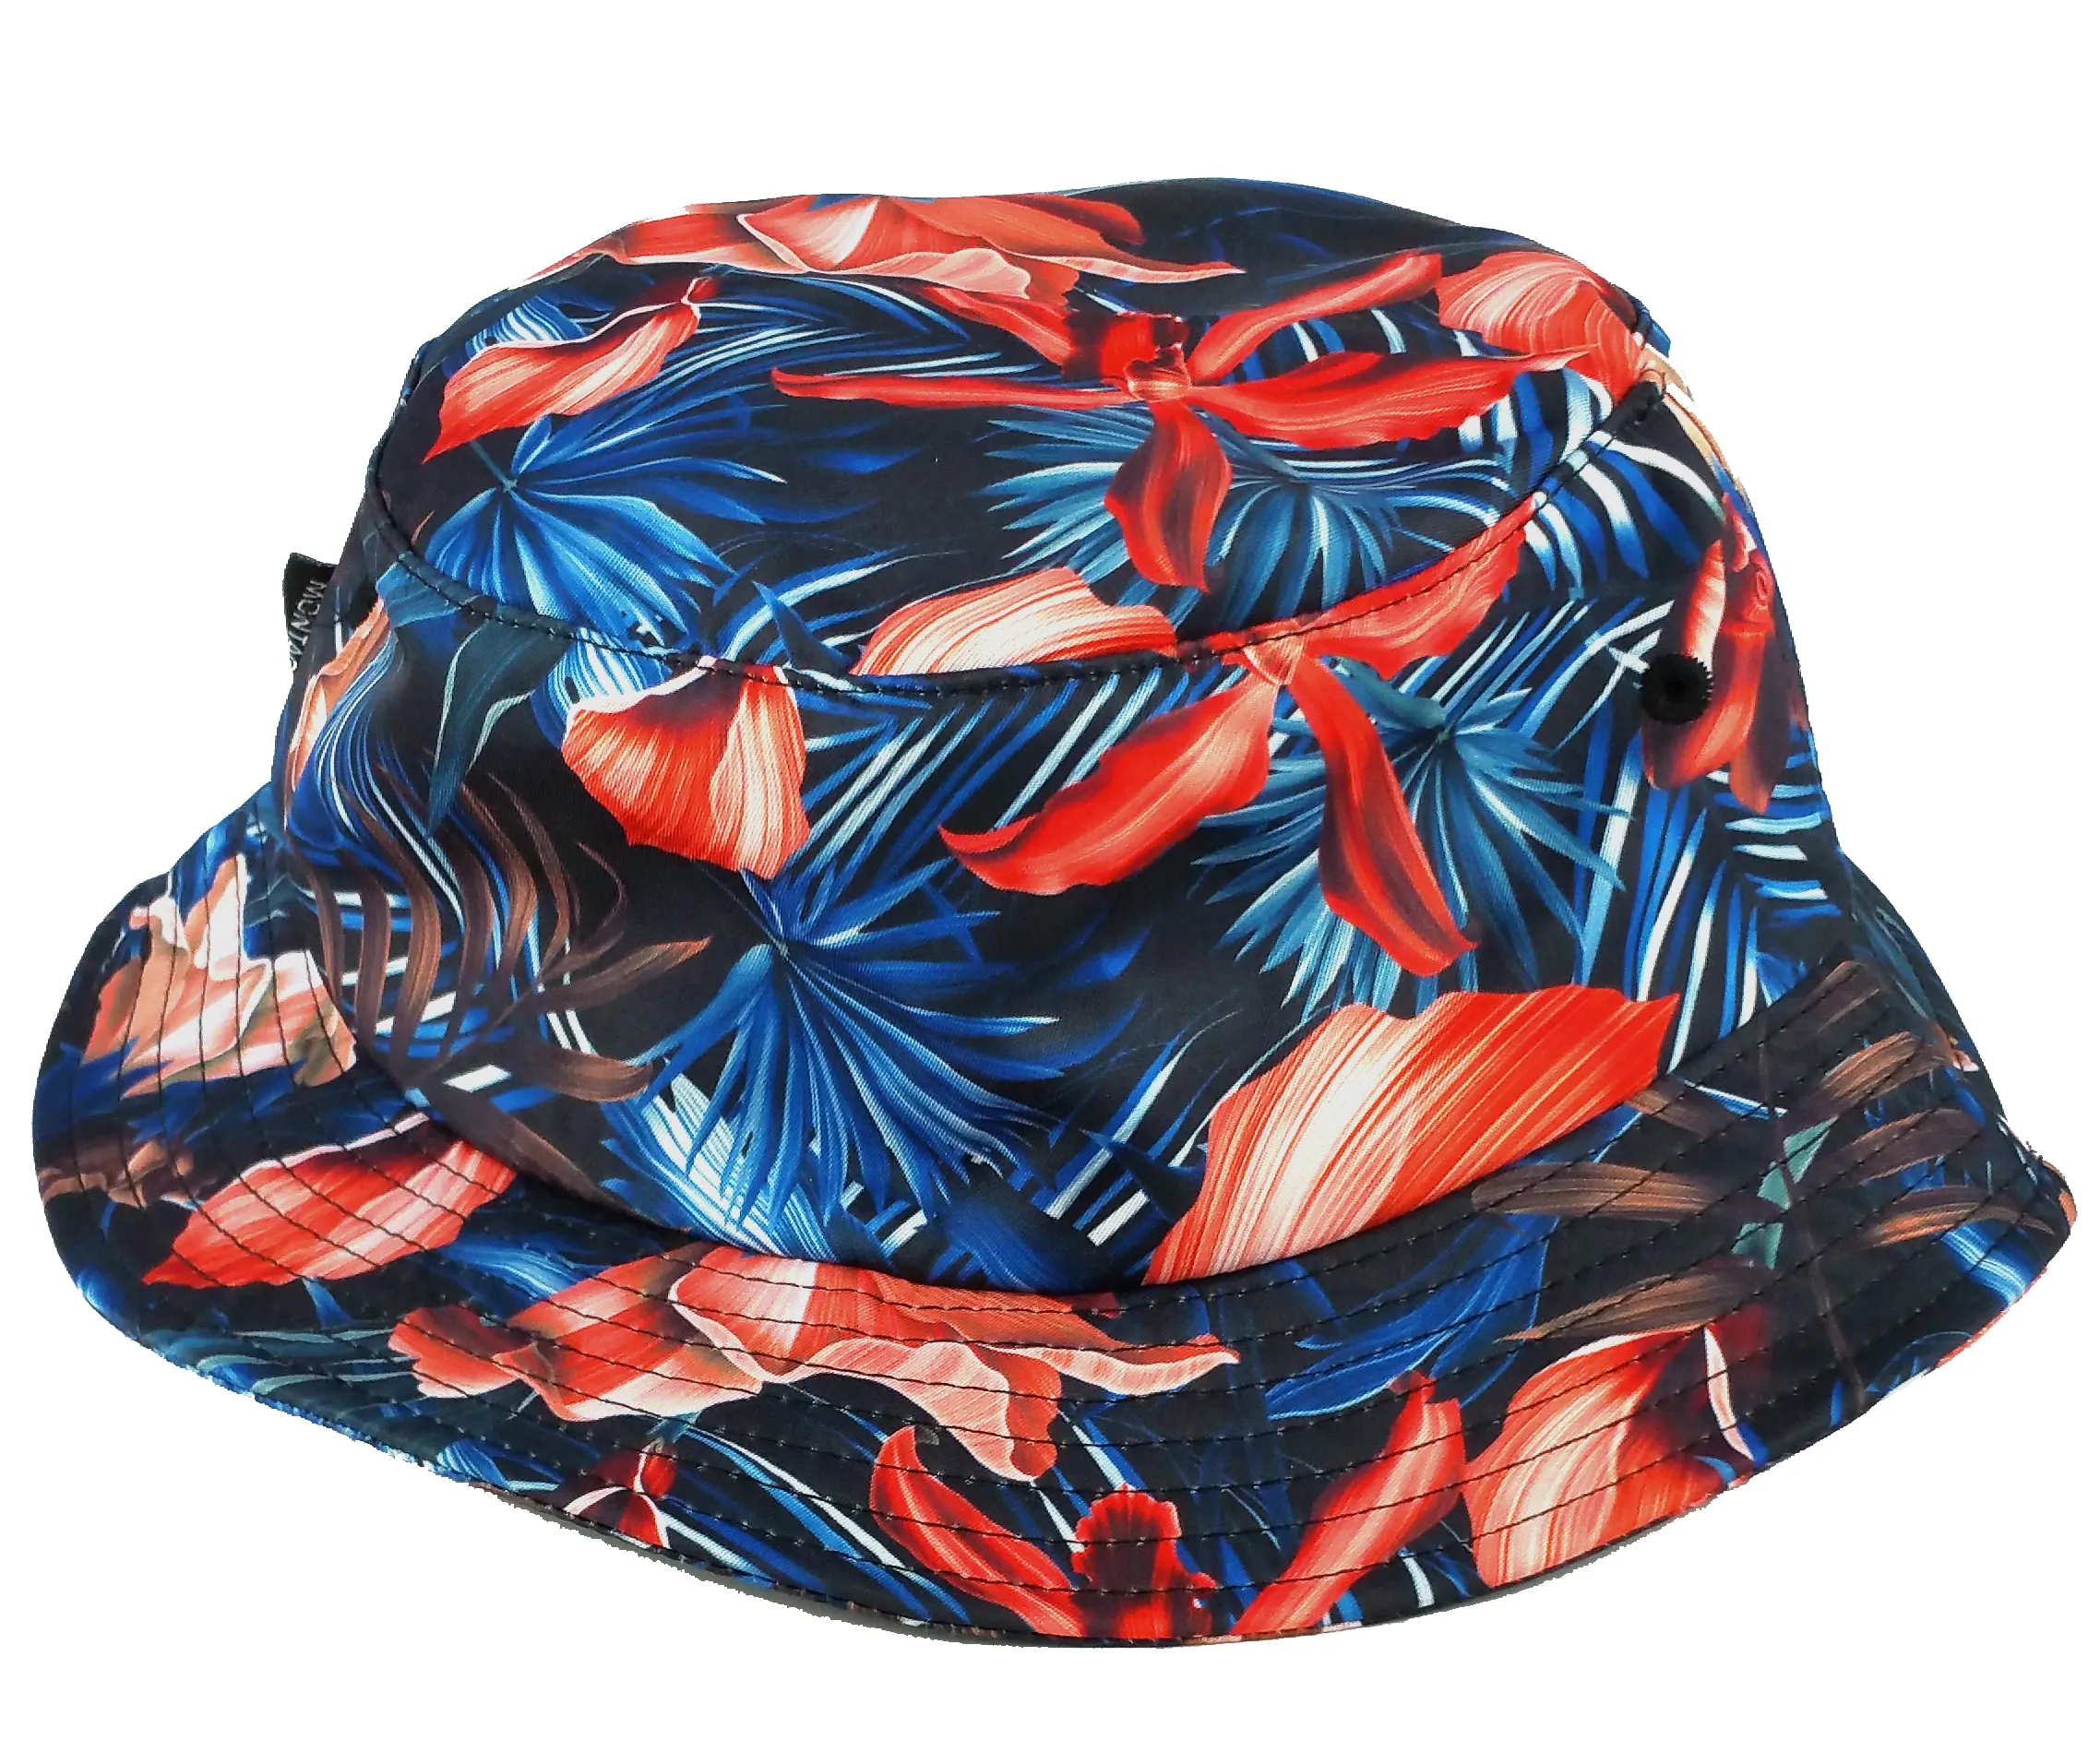 Bob de pêche pour hommes et femmes, nouveau Design à la mode, avec motif imprimé Floral coloré et personnalisé, pour l'été